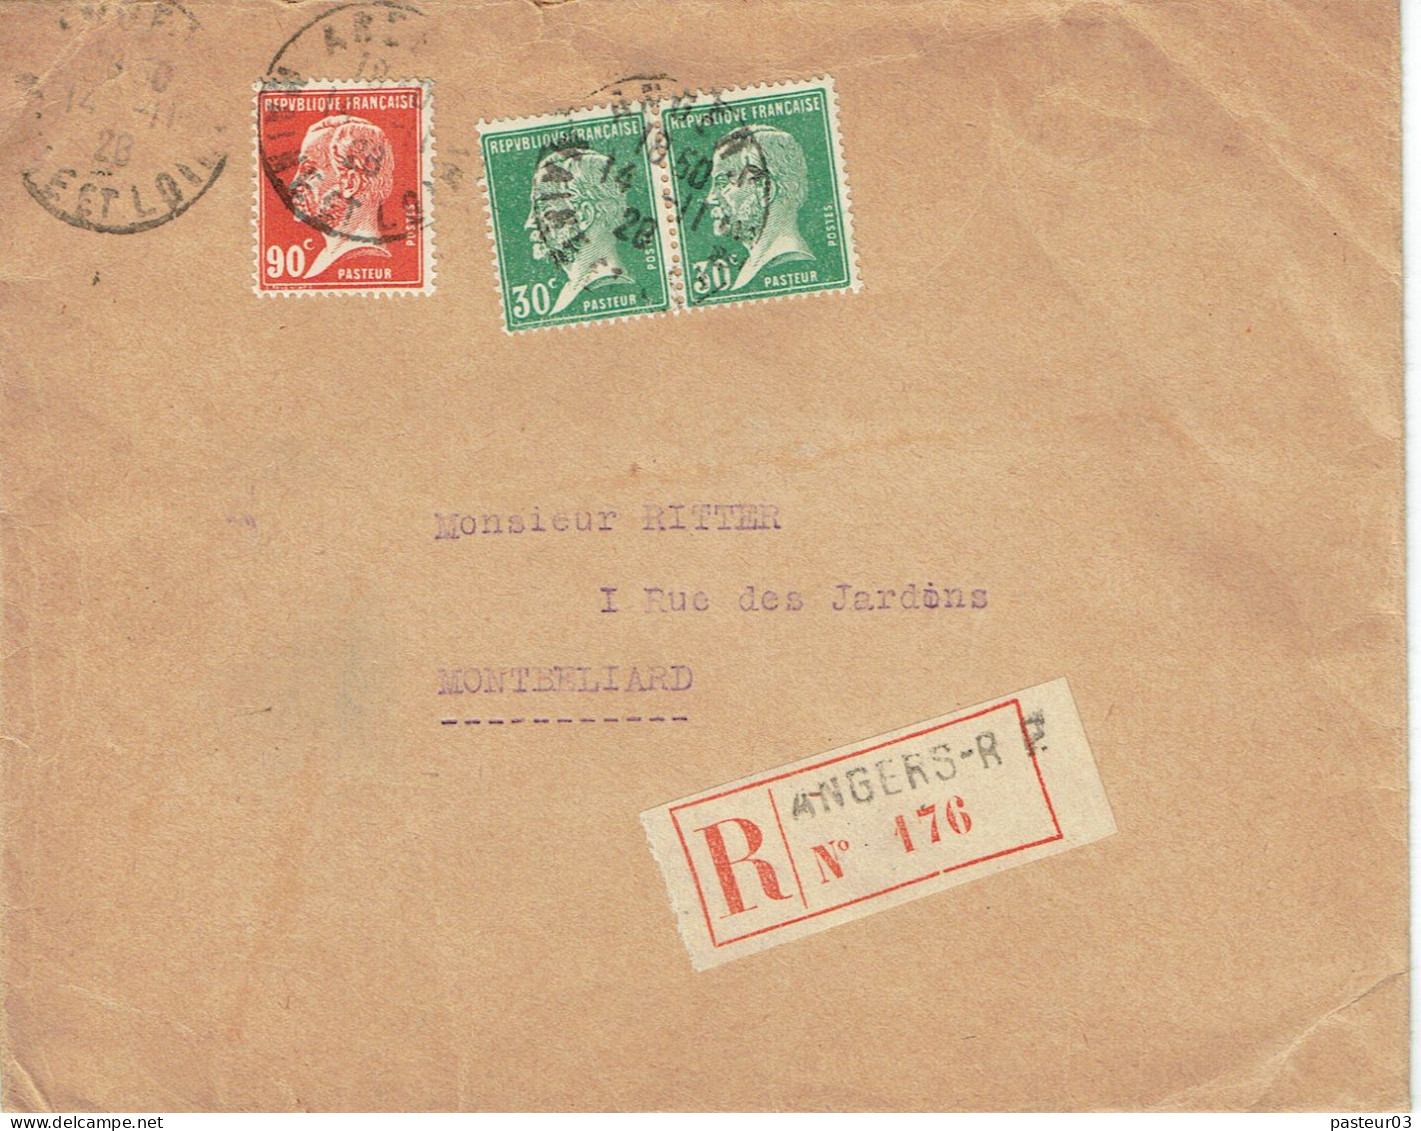 Tarifs Postaux France Du 09-08-1926 (51) Pasteur N° 174  30 C. X 2 +  Pasteur N° 178  90 C.  LR 1er 12-11-1928 - 1922-26 Pasteur